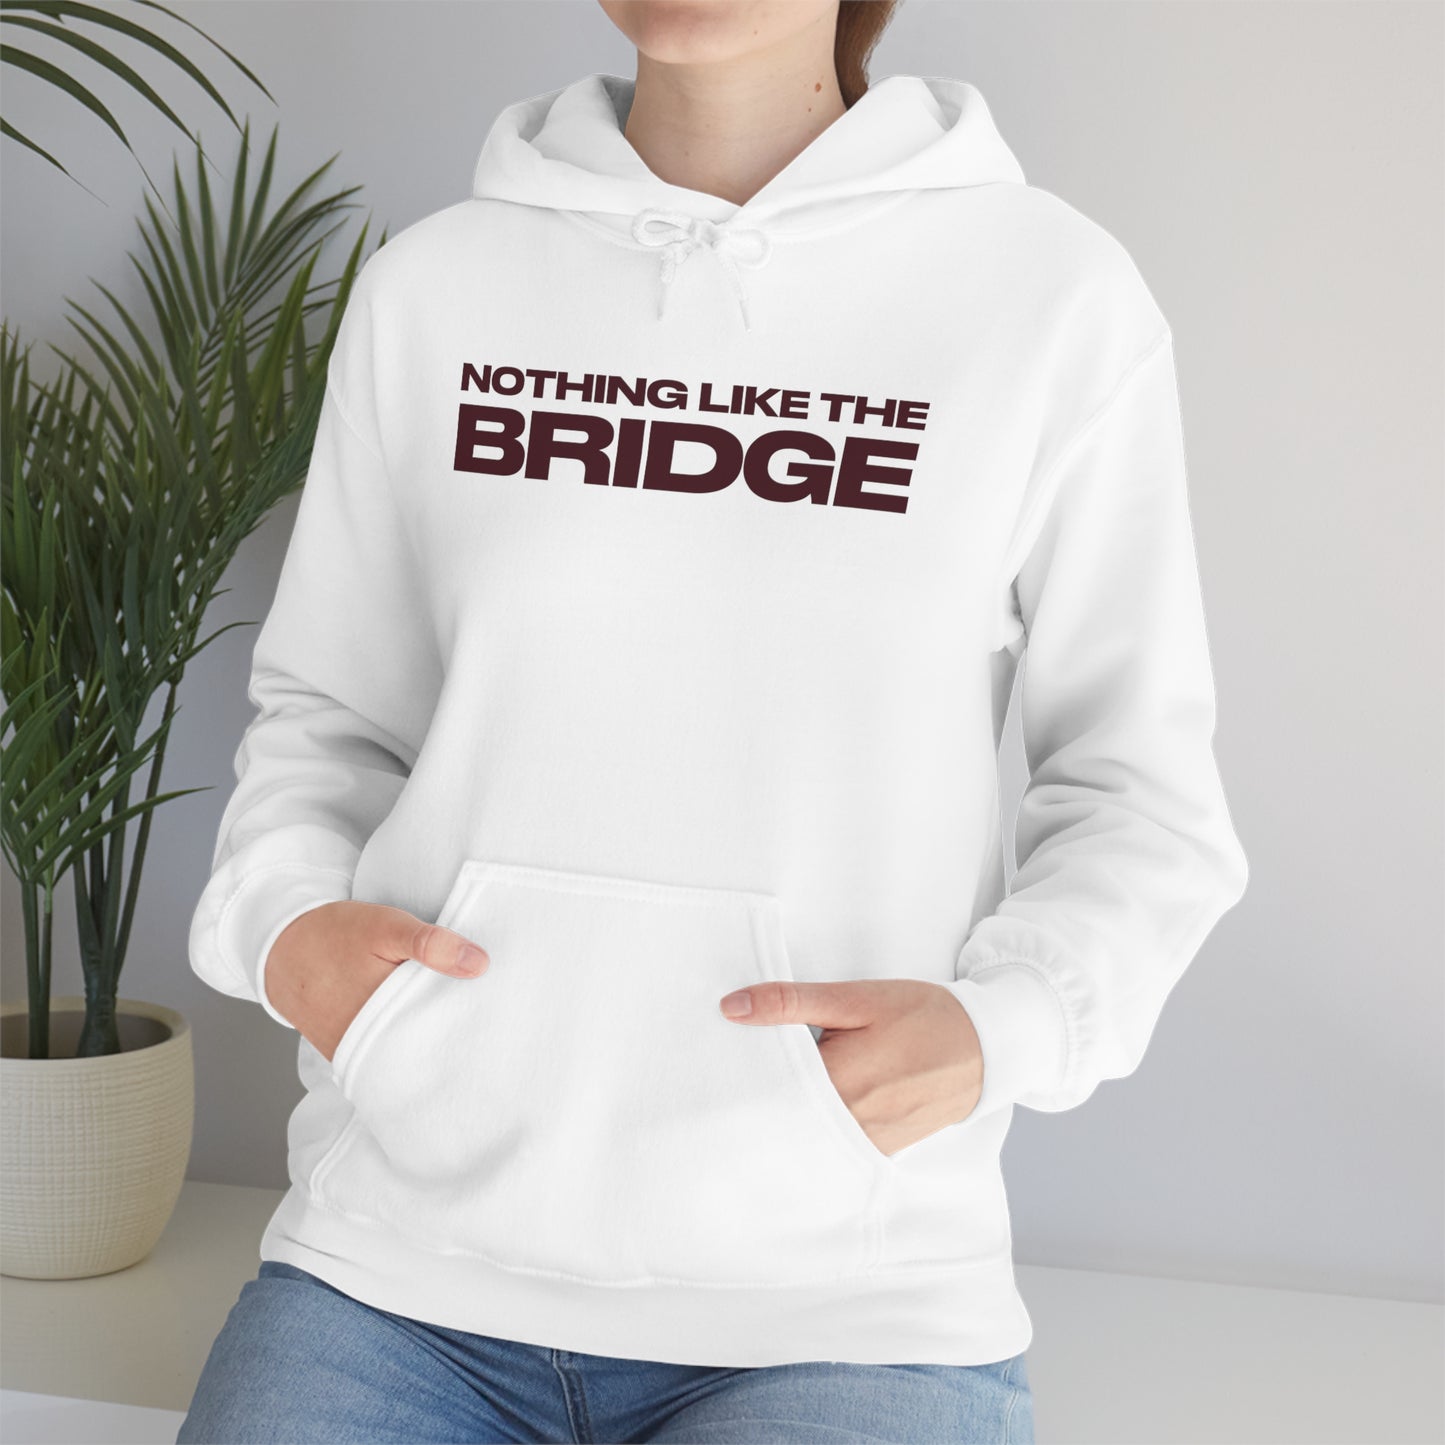 Nothing Like The Bridge Hooded Sweatshirt